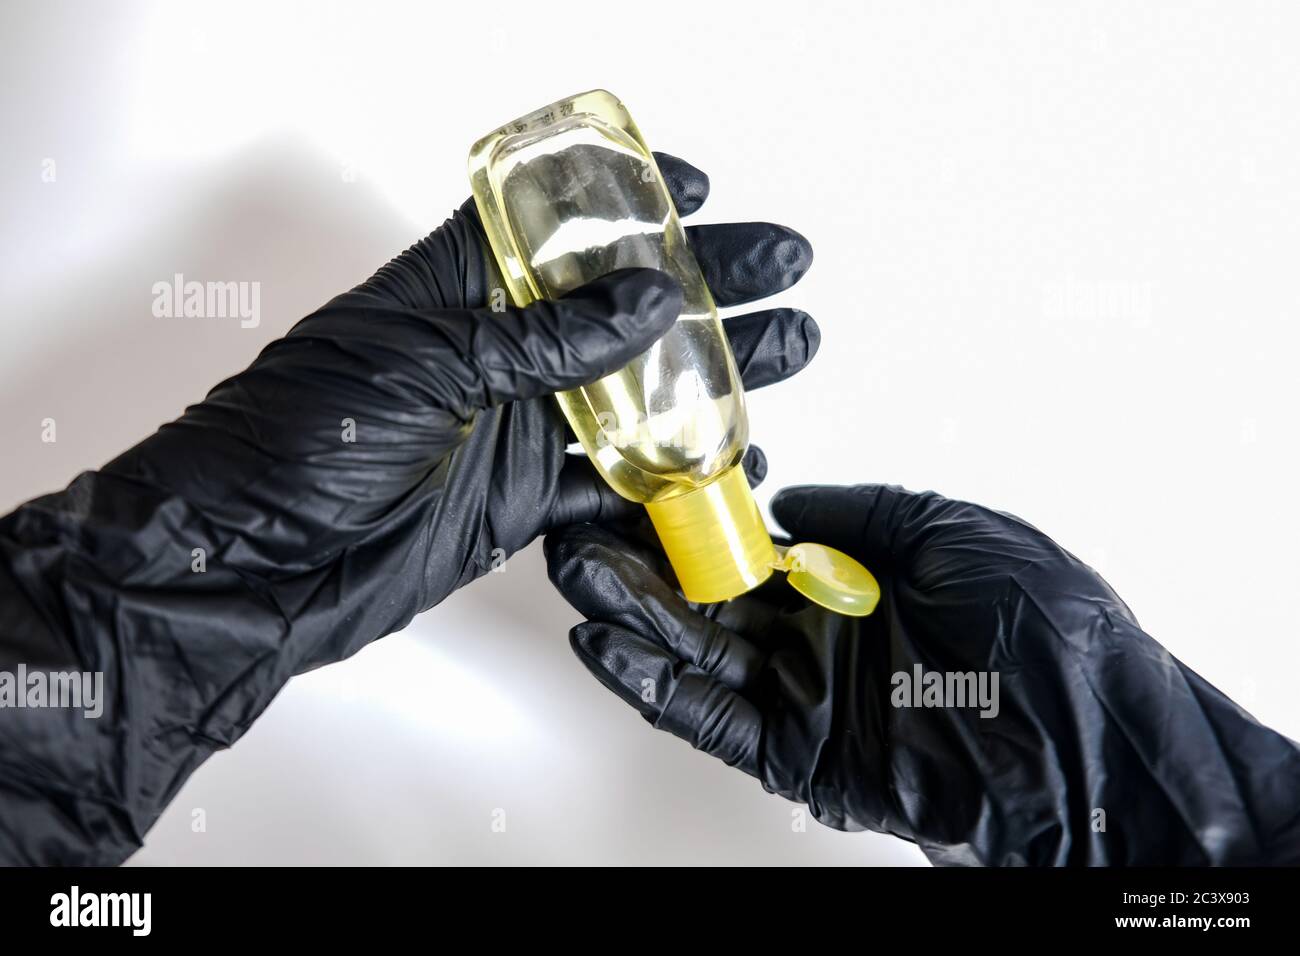 Deux mains en gants noirs appliquant l'assainisseur pour les mains à partir d'une petite bouteille jaune sur un fond blanc. Désinfection des surfaces pour rester en bonne santé en isolement Banque D'Images